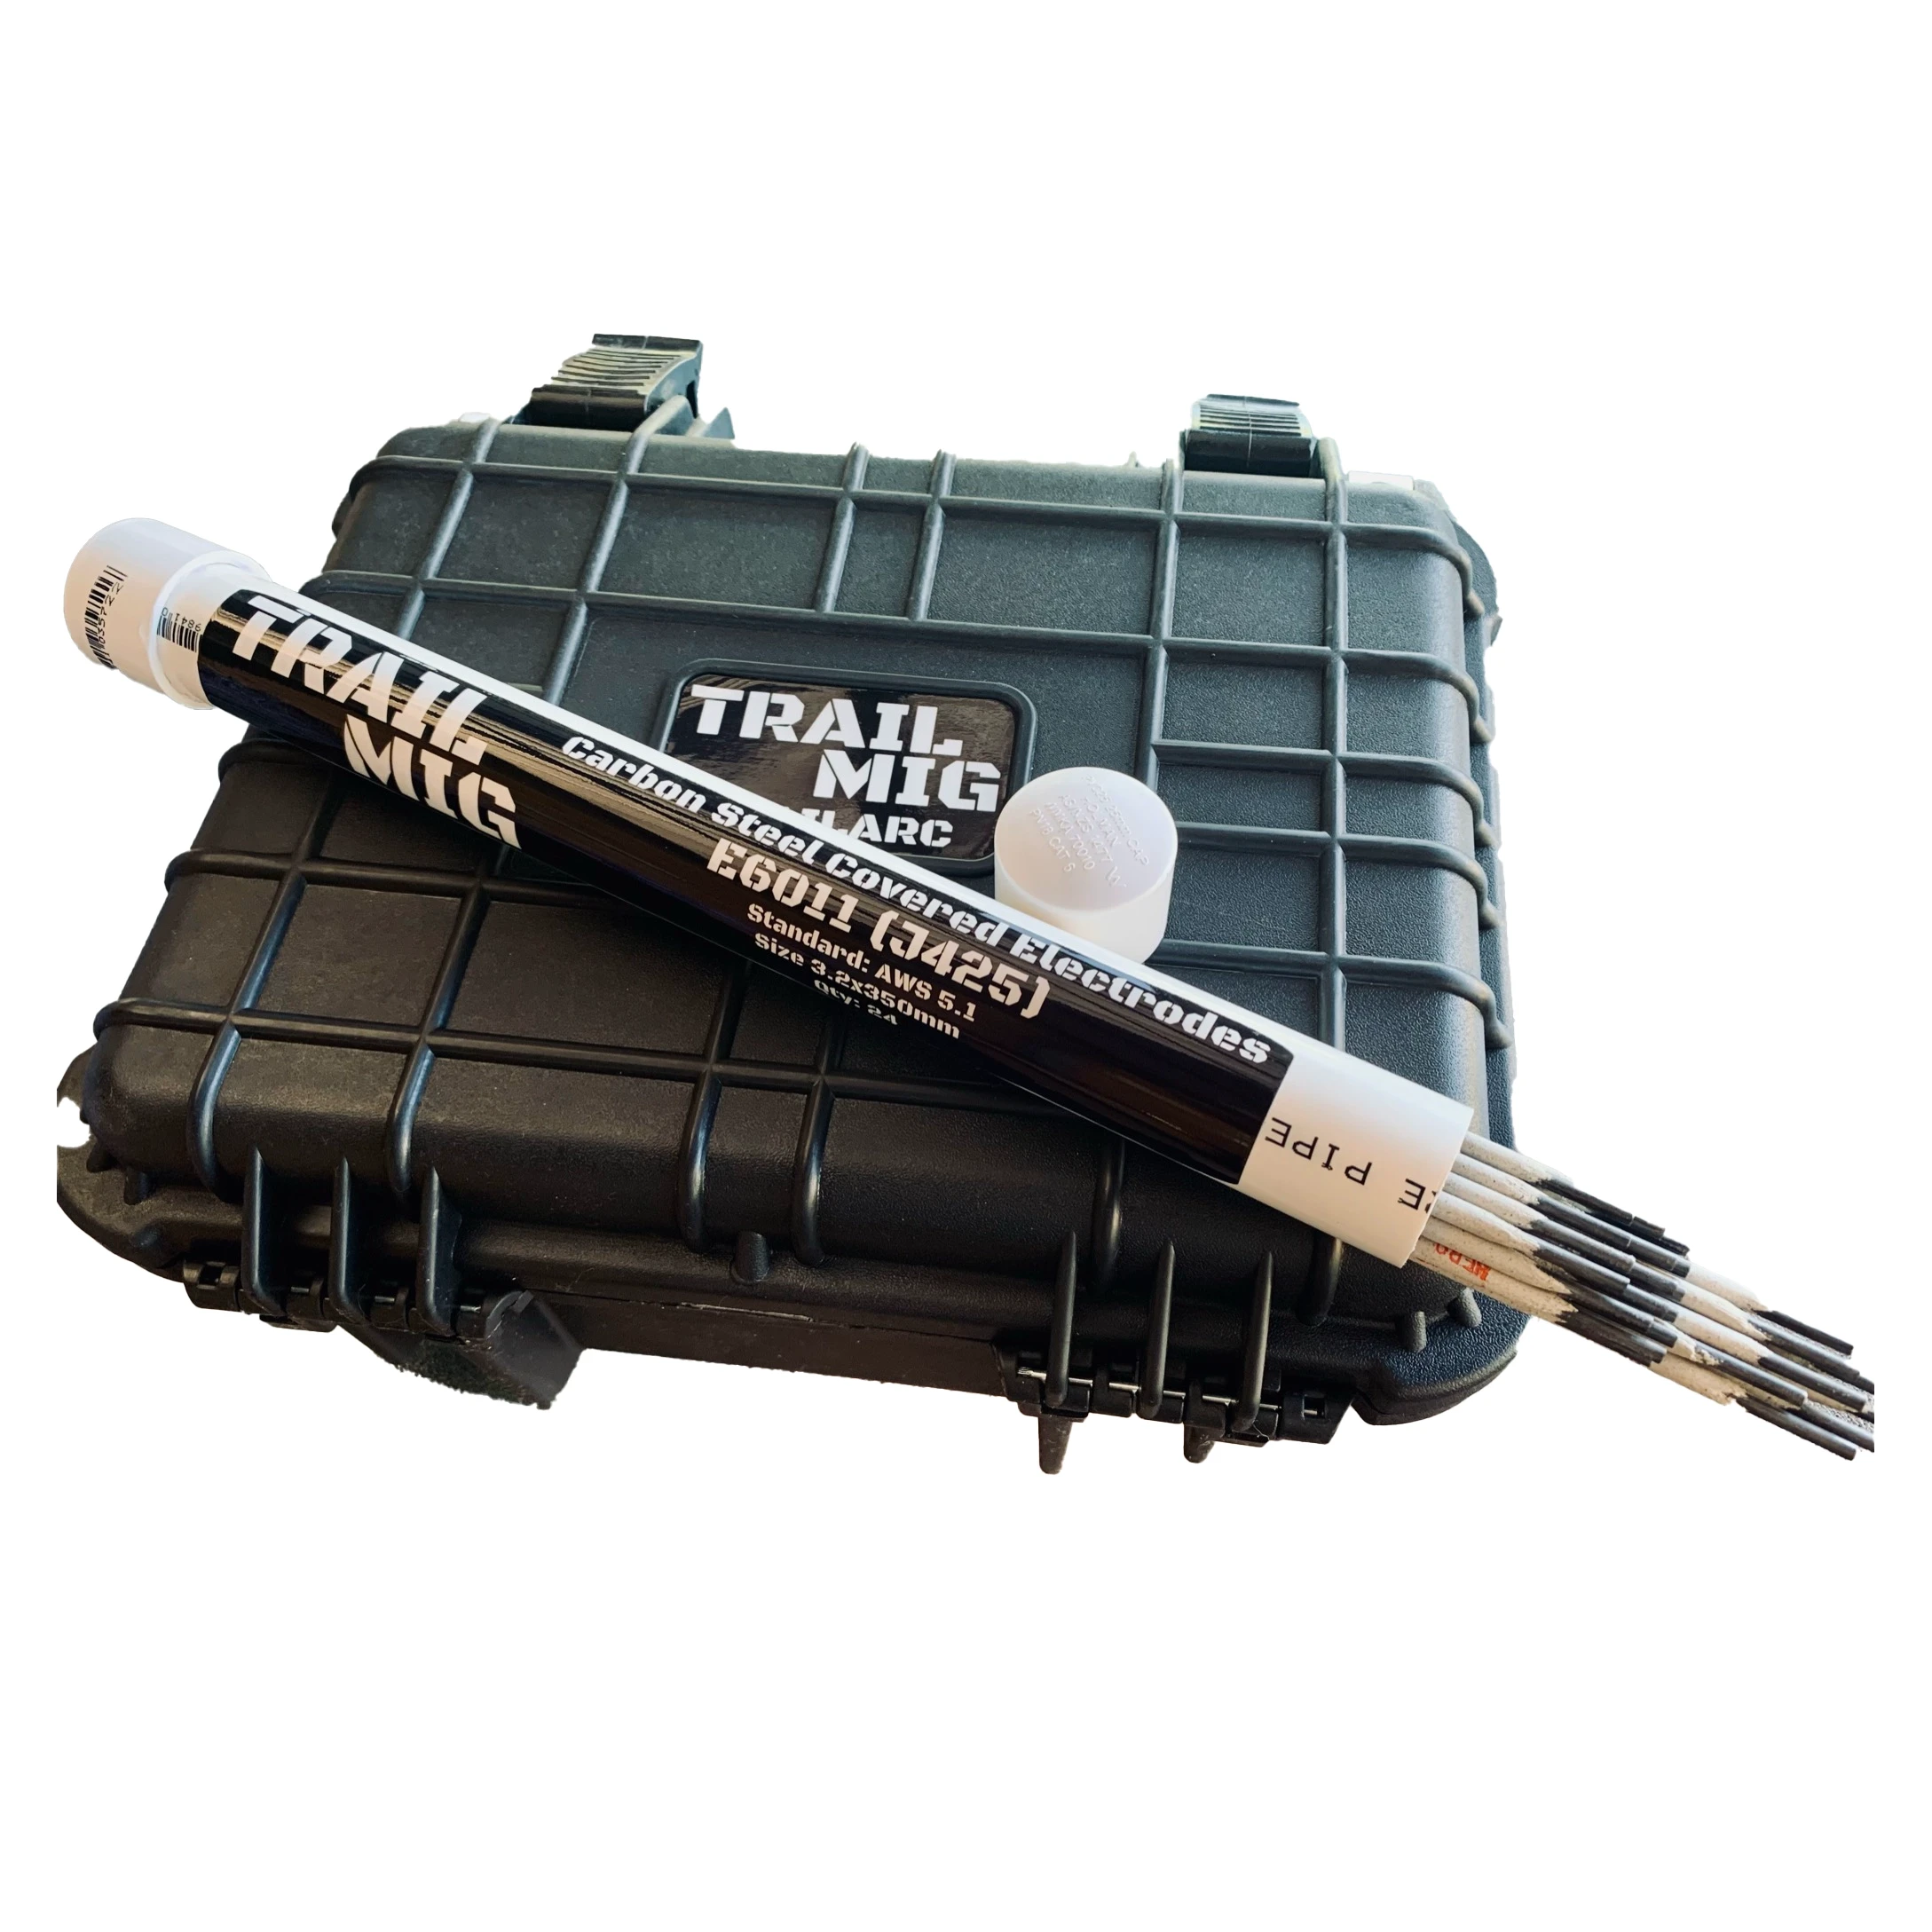 TRAILARC Portable 24-36v Stick Welder